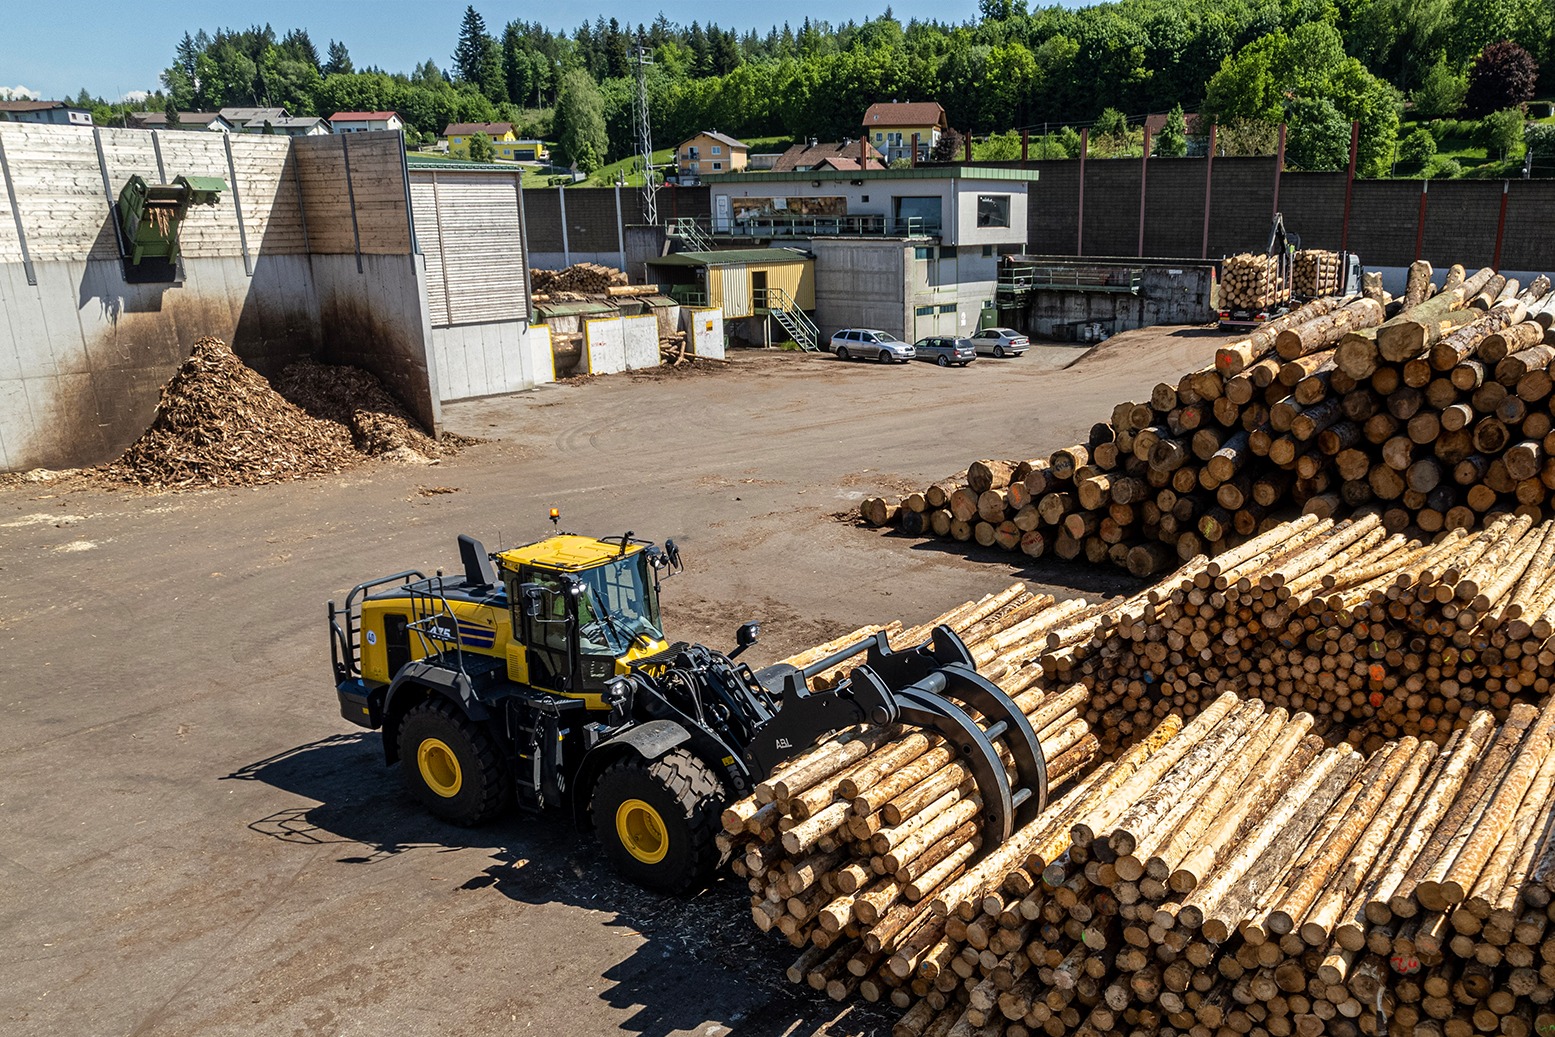 La movimentazione di tronchi con la Komatsu WA475-10 è ottimizzata con la versione timber